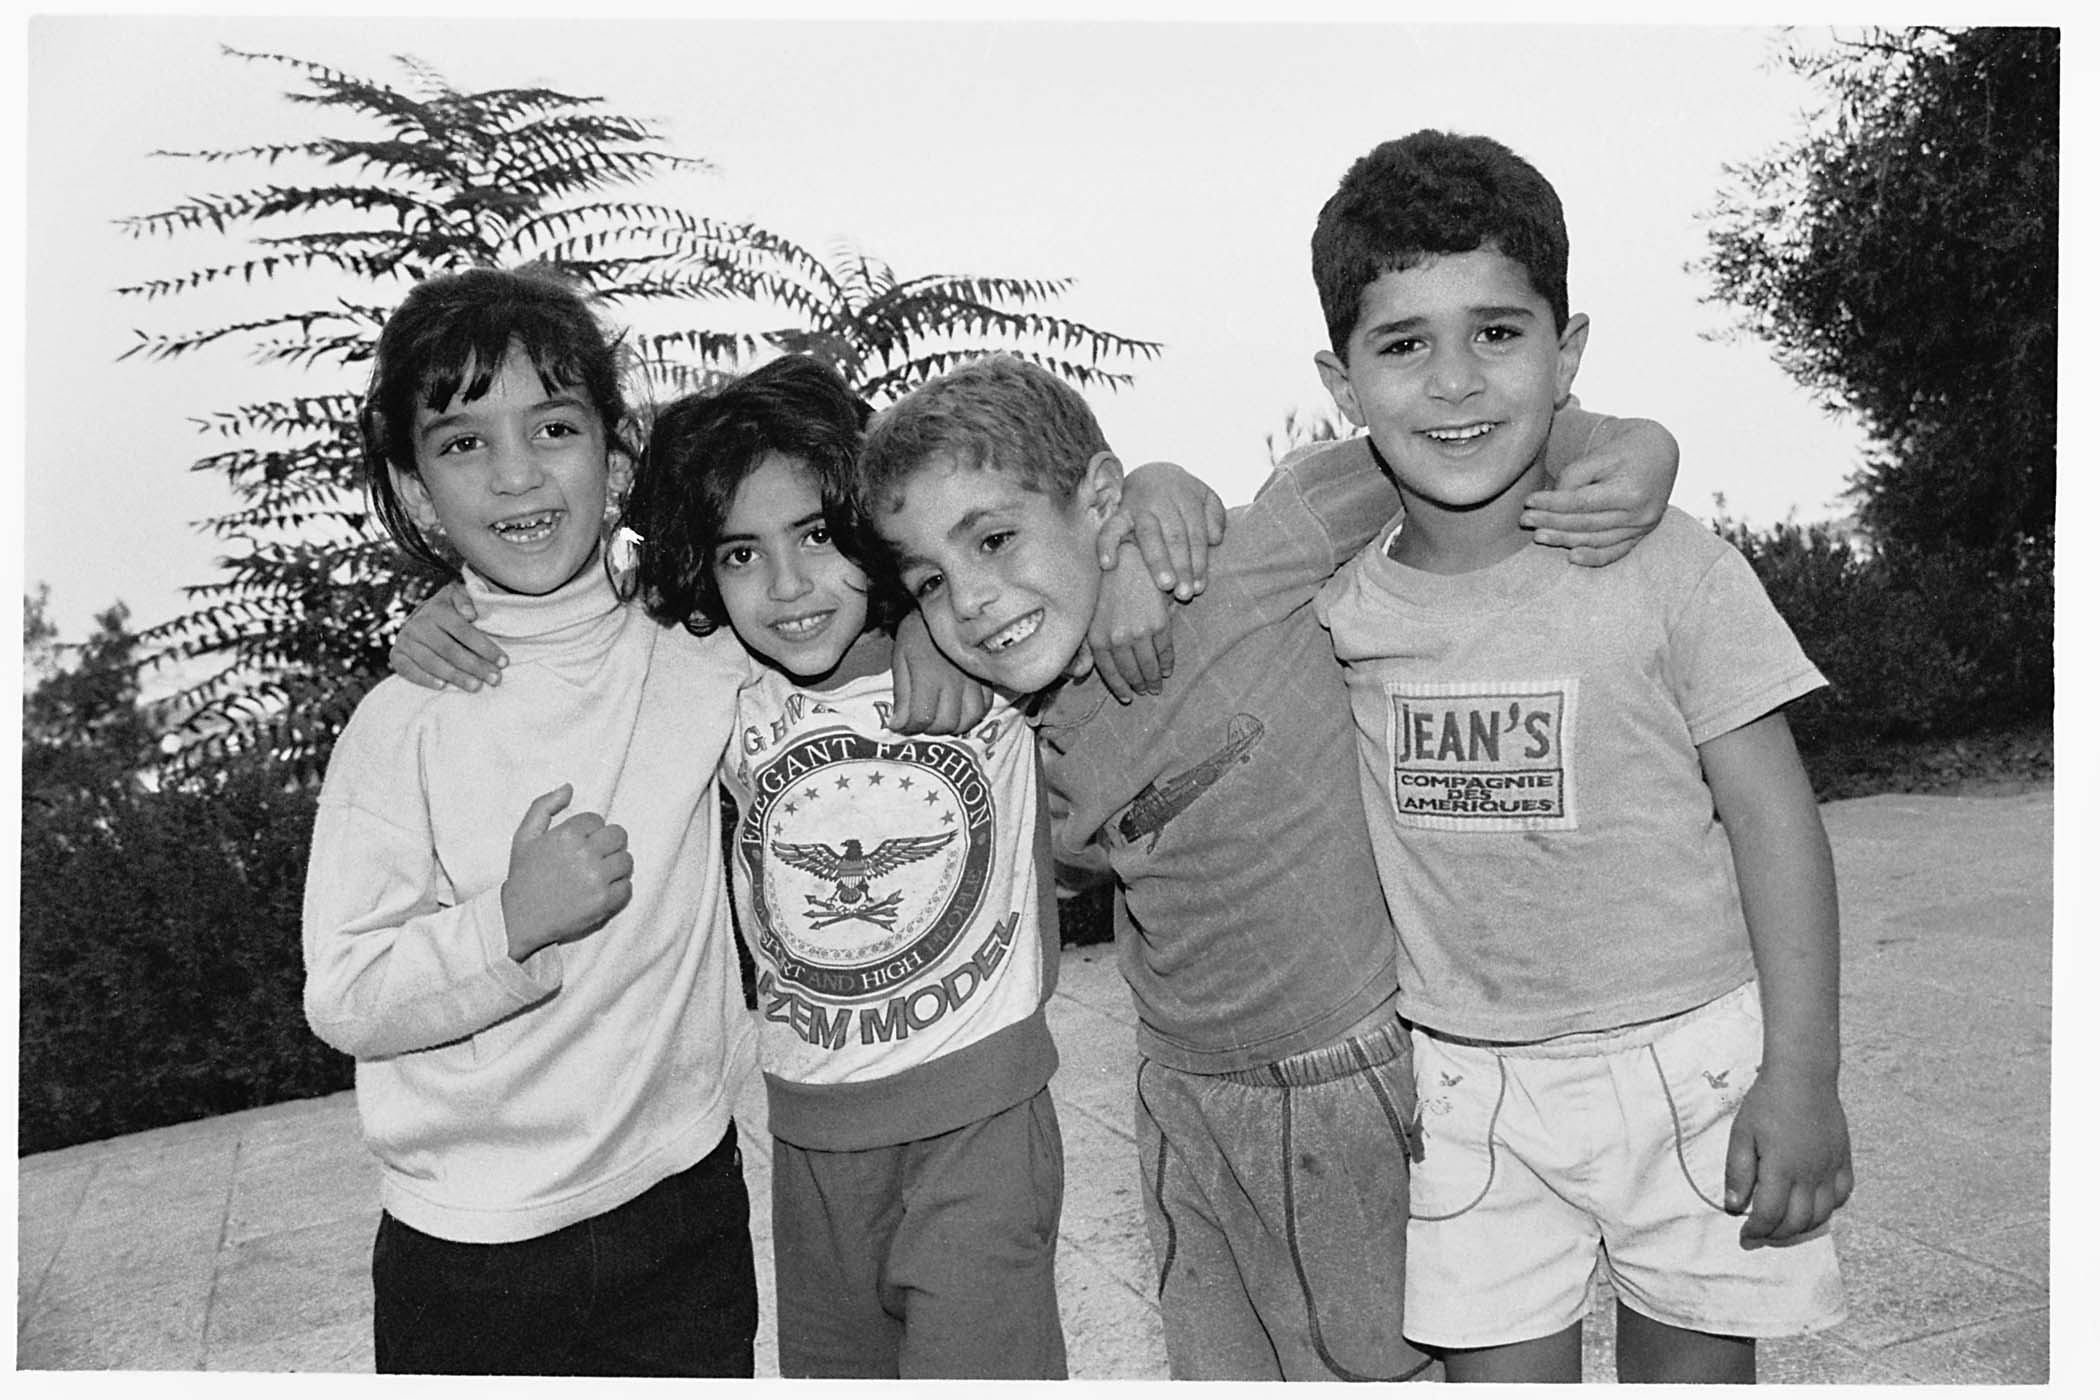 Palestinian children